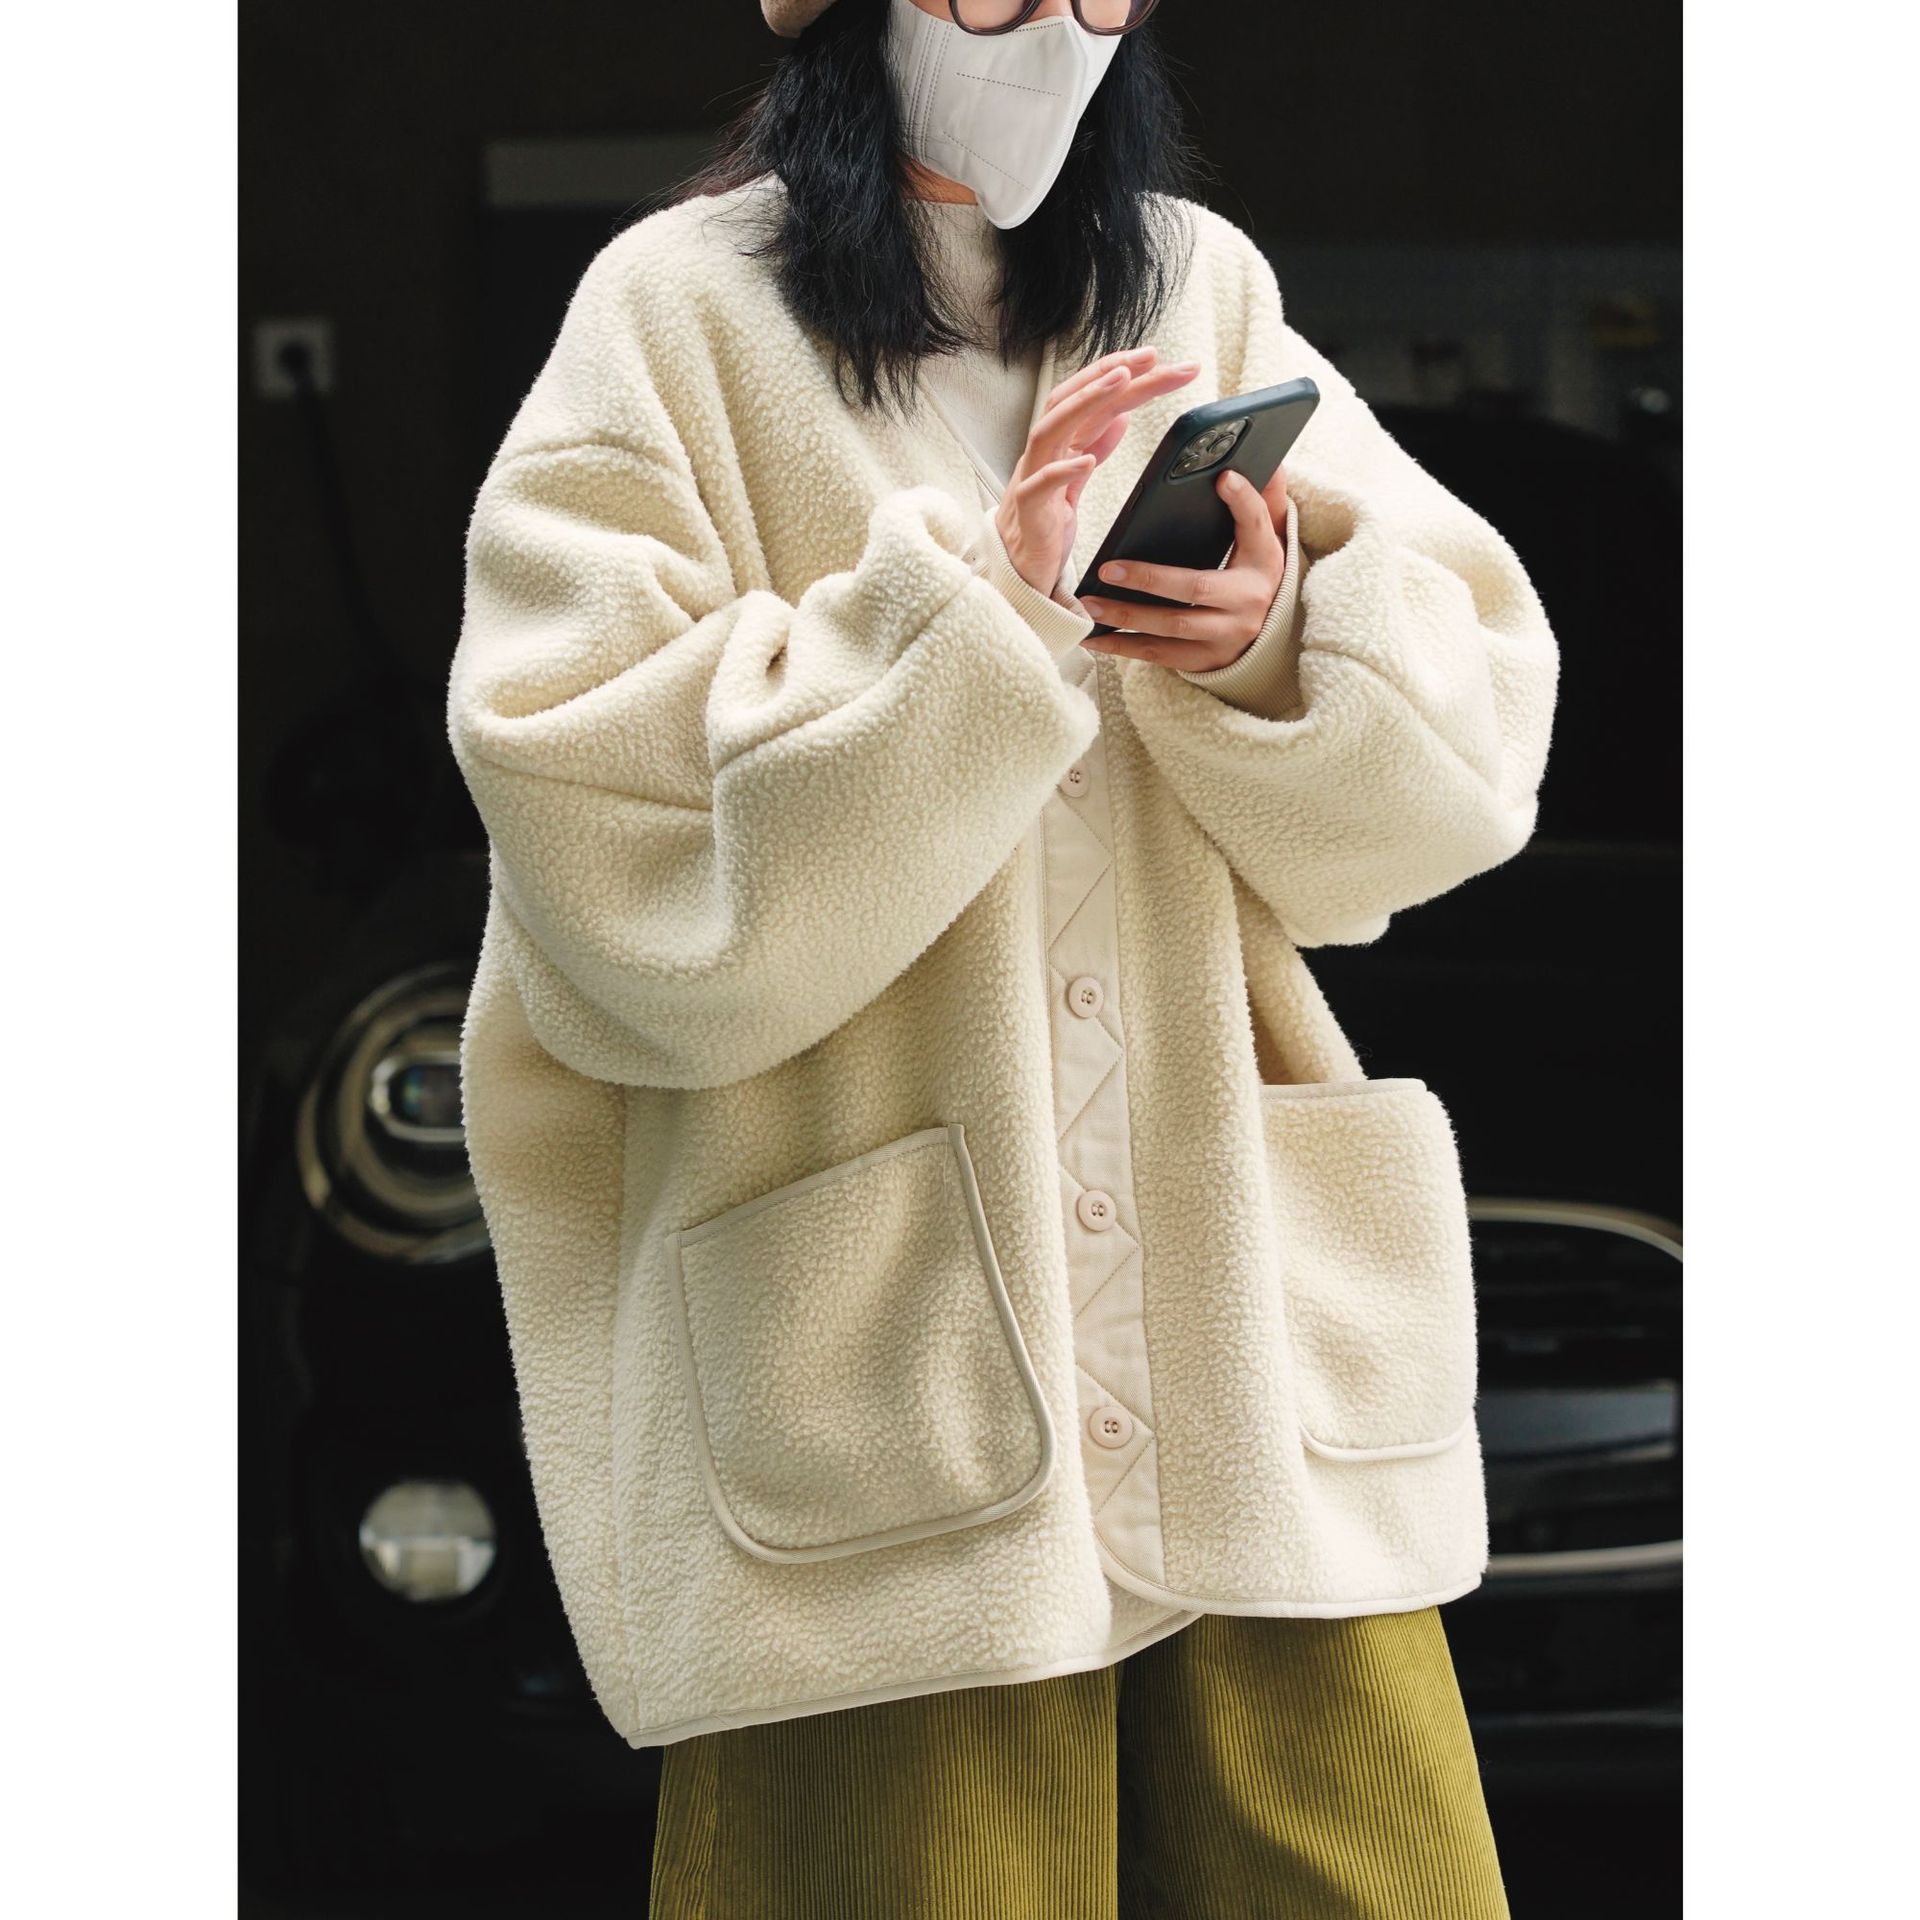 冬季新款韩版简约加厚摇粒绒夹克宽松显瘦御寒保暖休闲通勤外套女